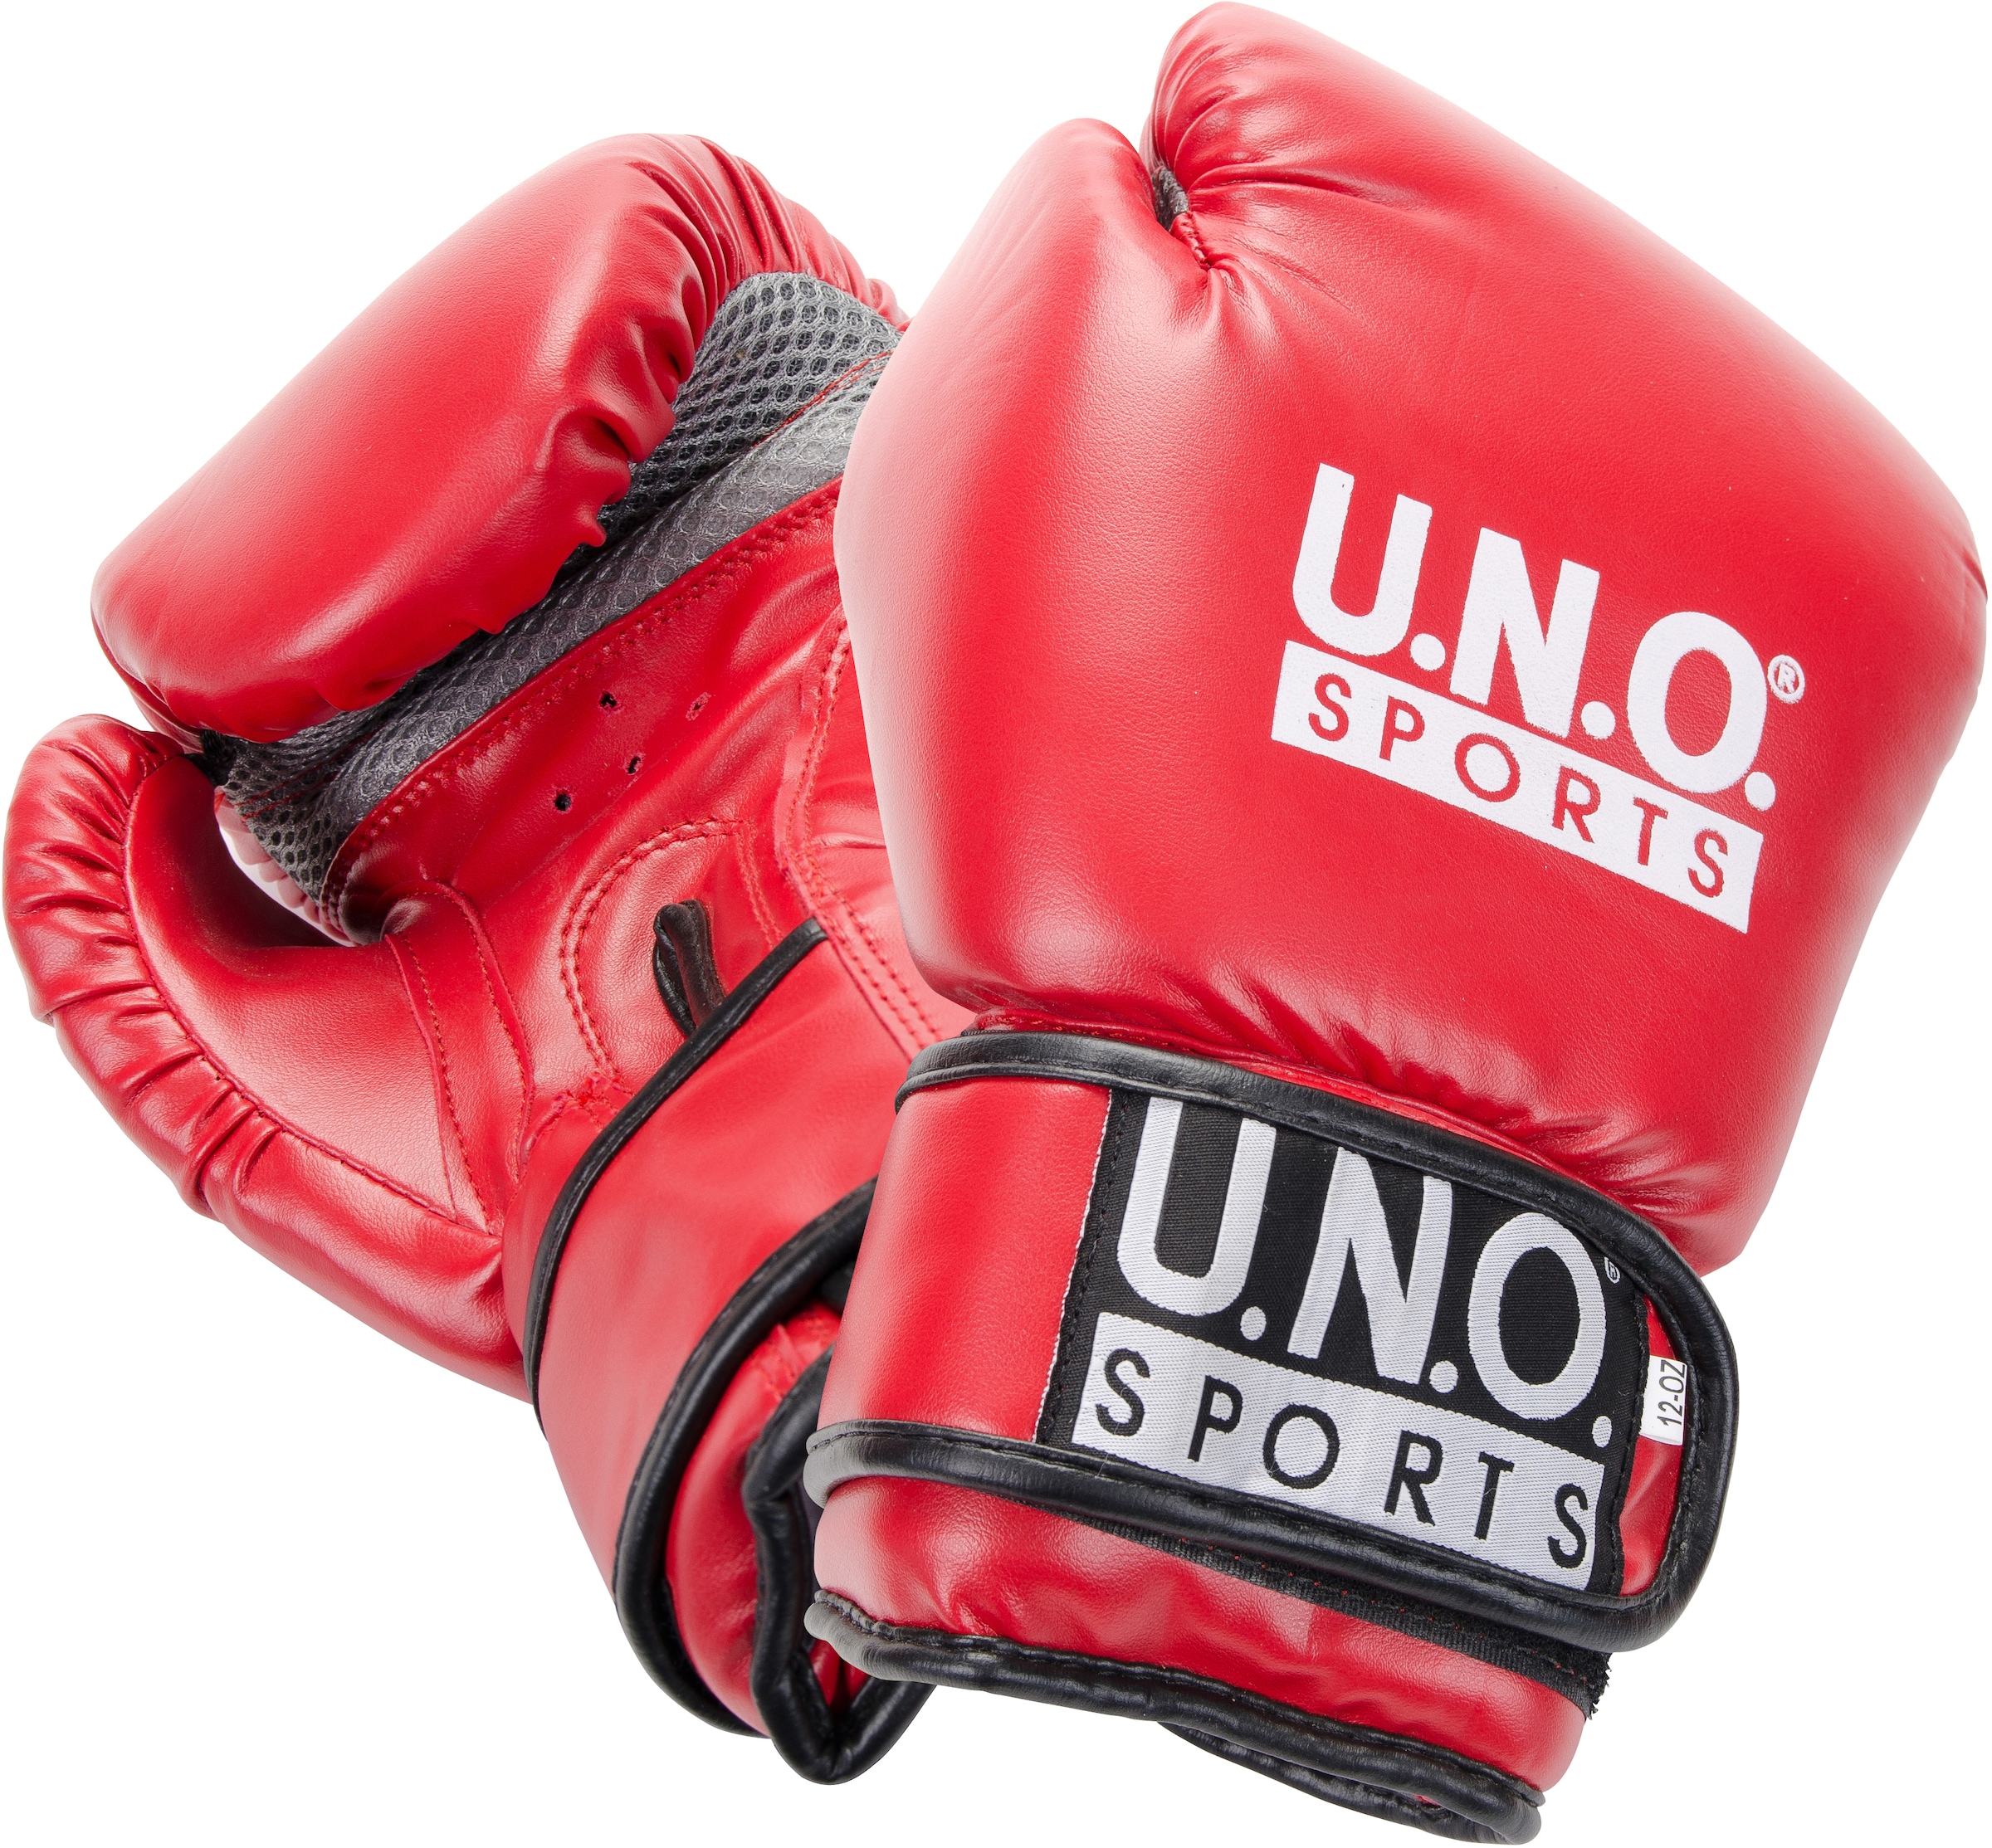 für Heimtraining Boxhandschuhe SPORTS U.N.O. günstig kaufen »Fun«, leichtes